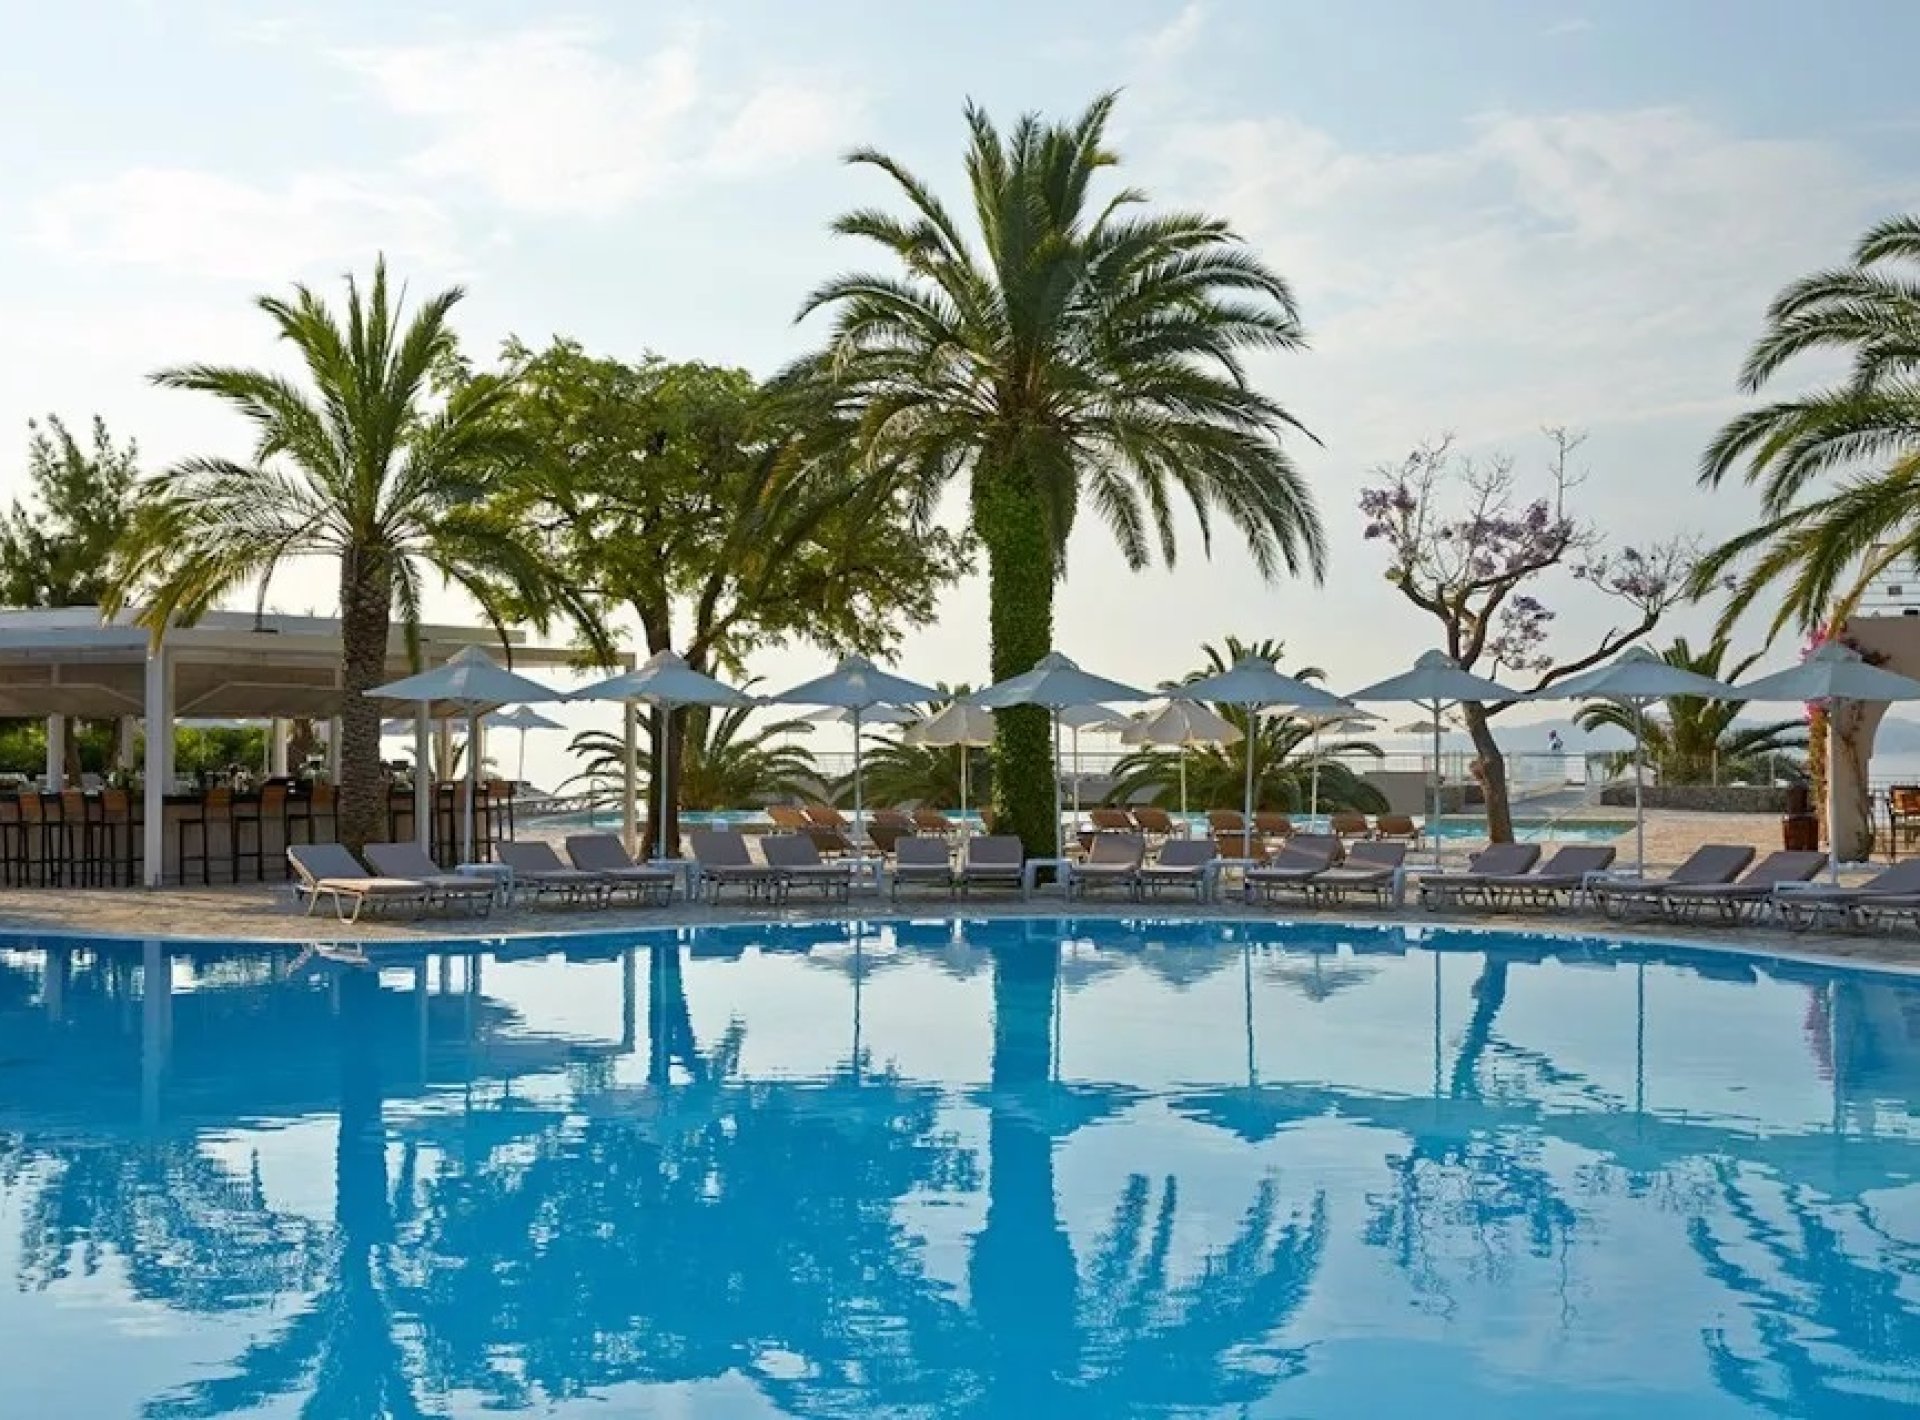 ISholidays Corfu Mar Bella One Bedroom Bungalow Suite Private Pool